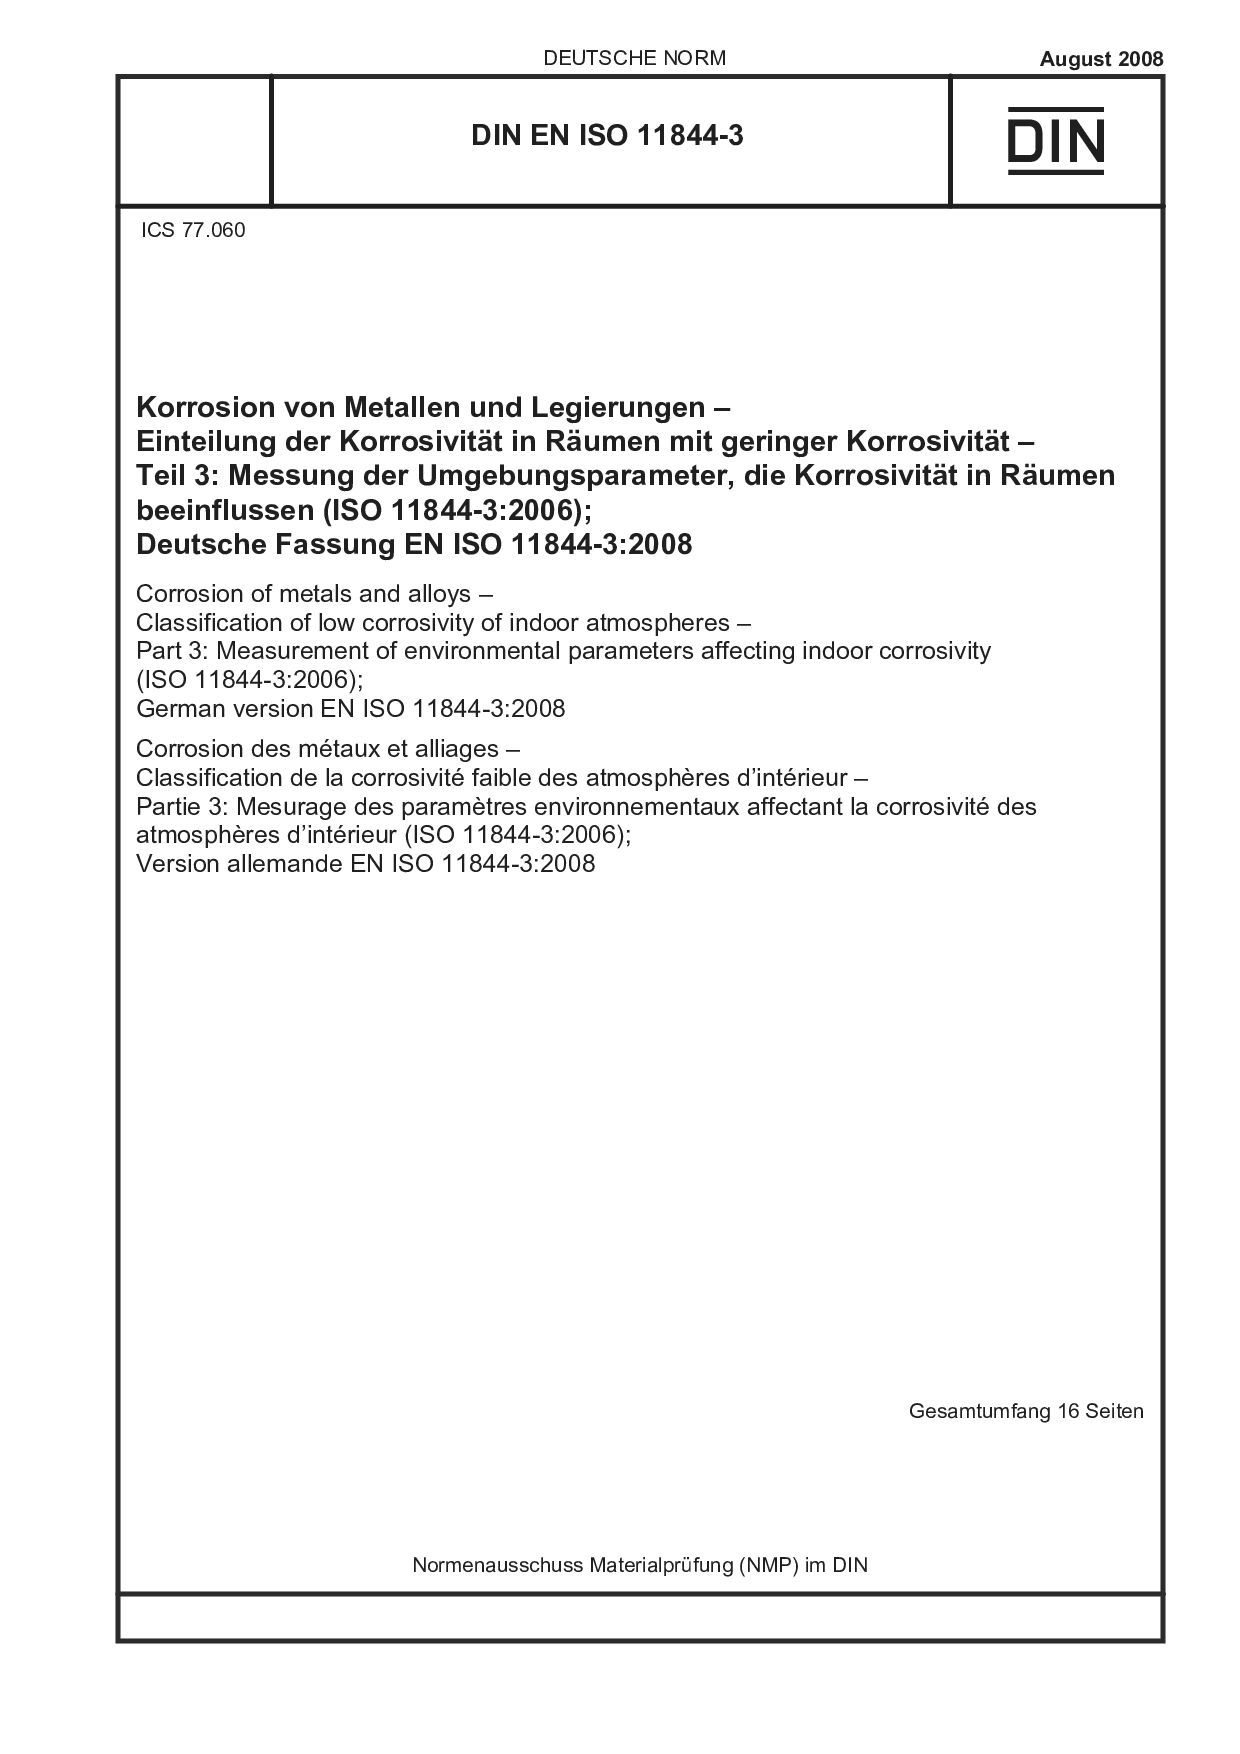 DIN EN ISO 11844-3:2008封面图